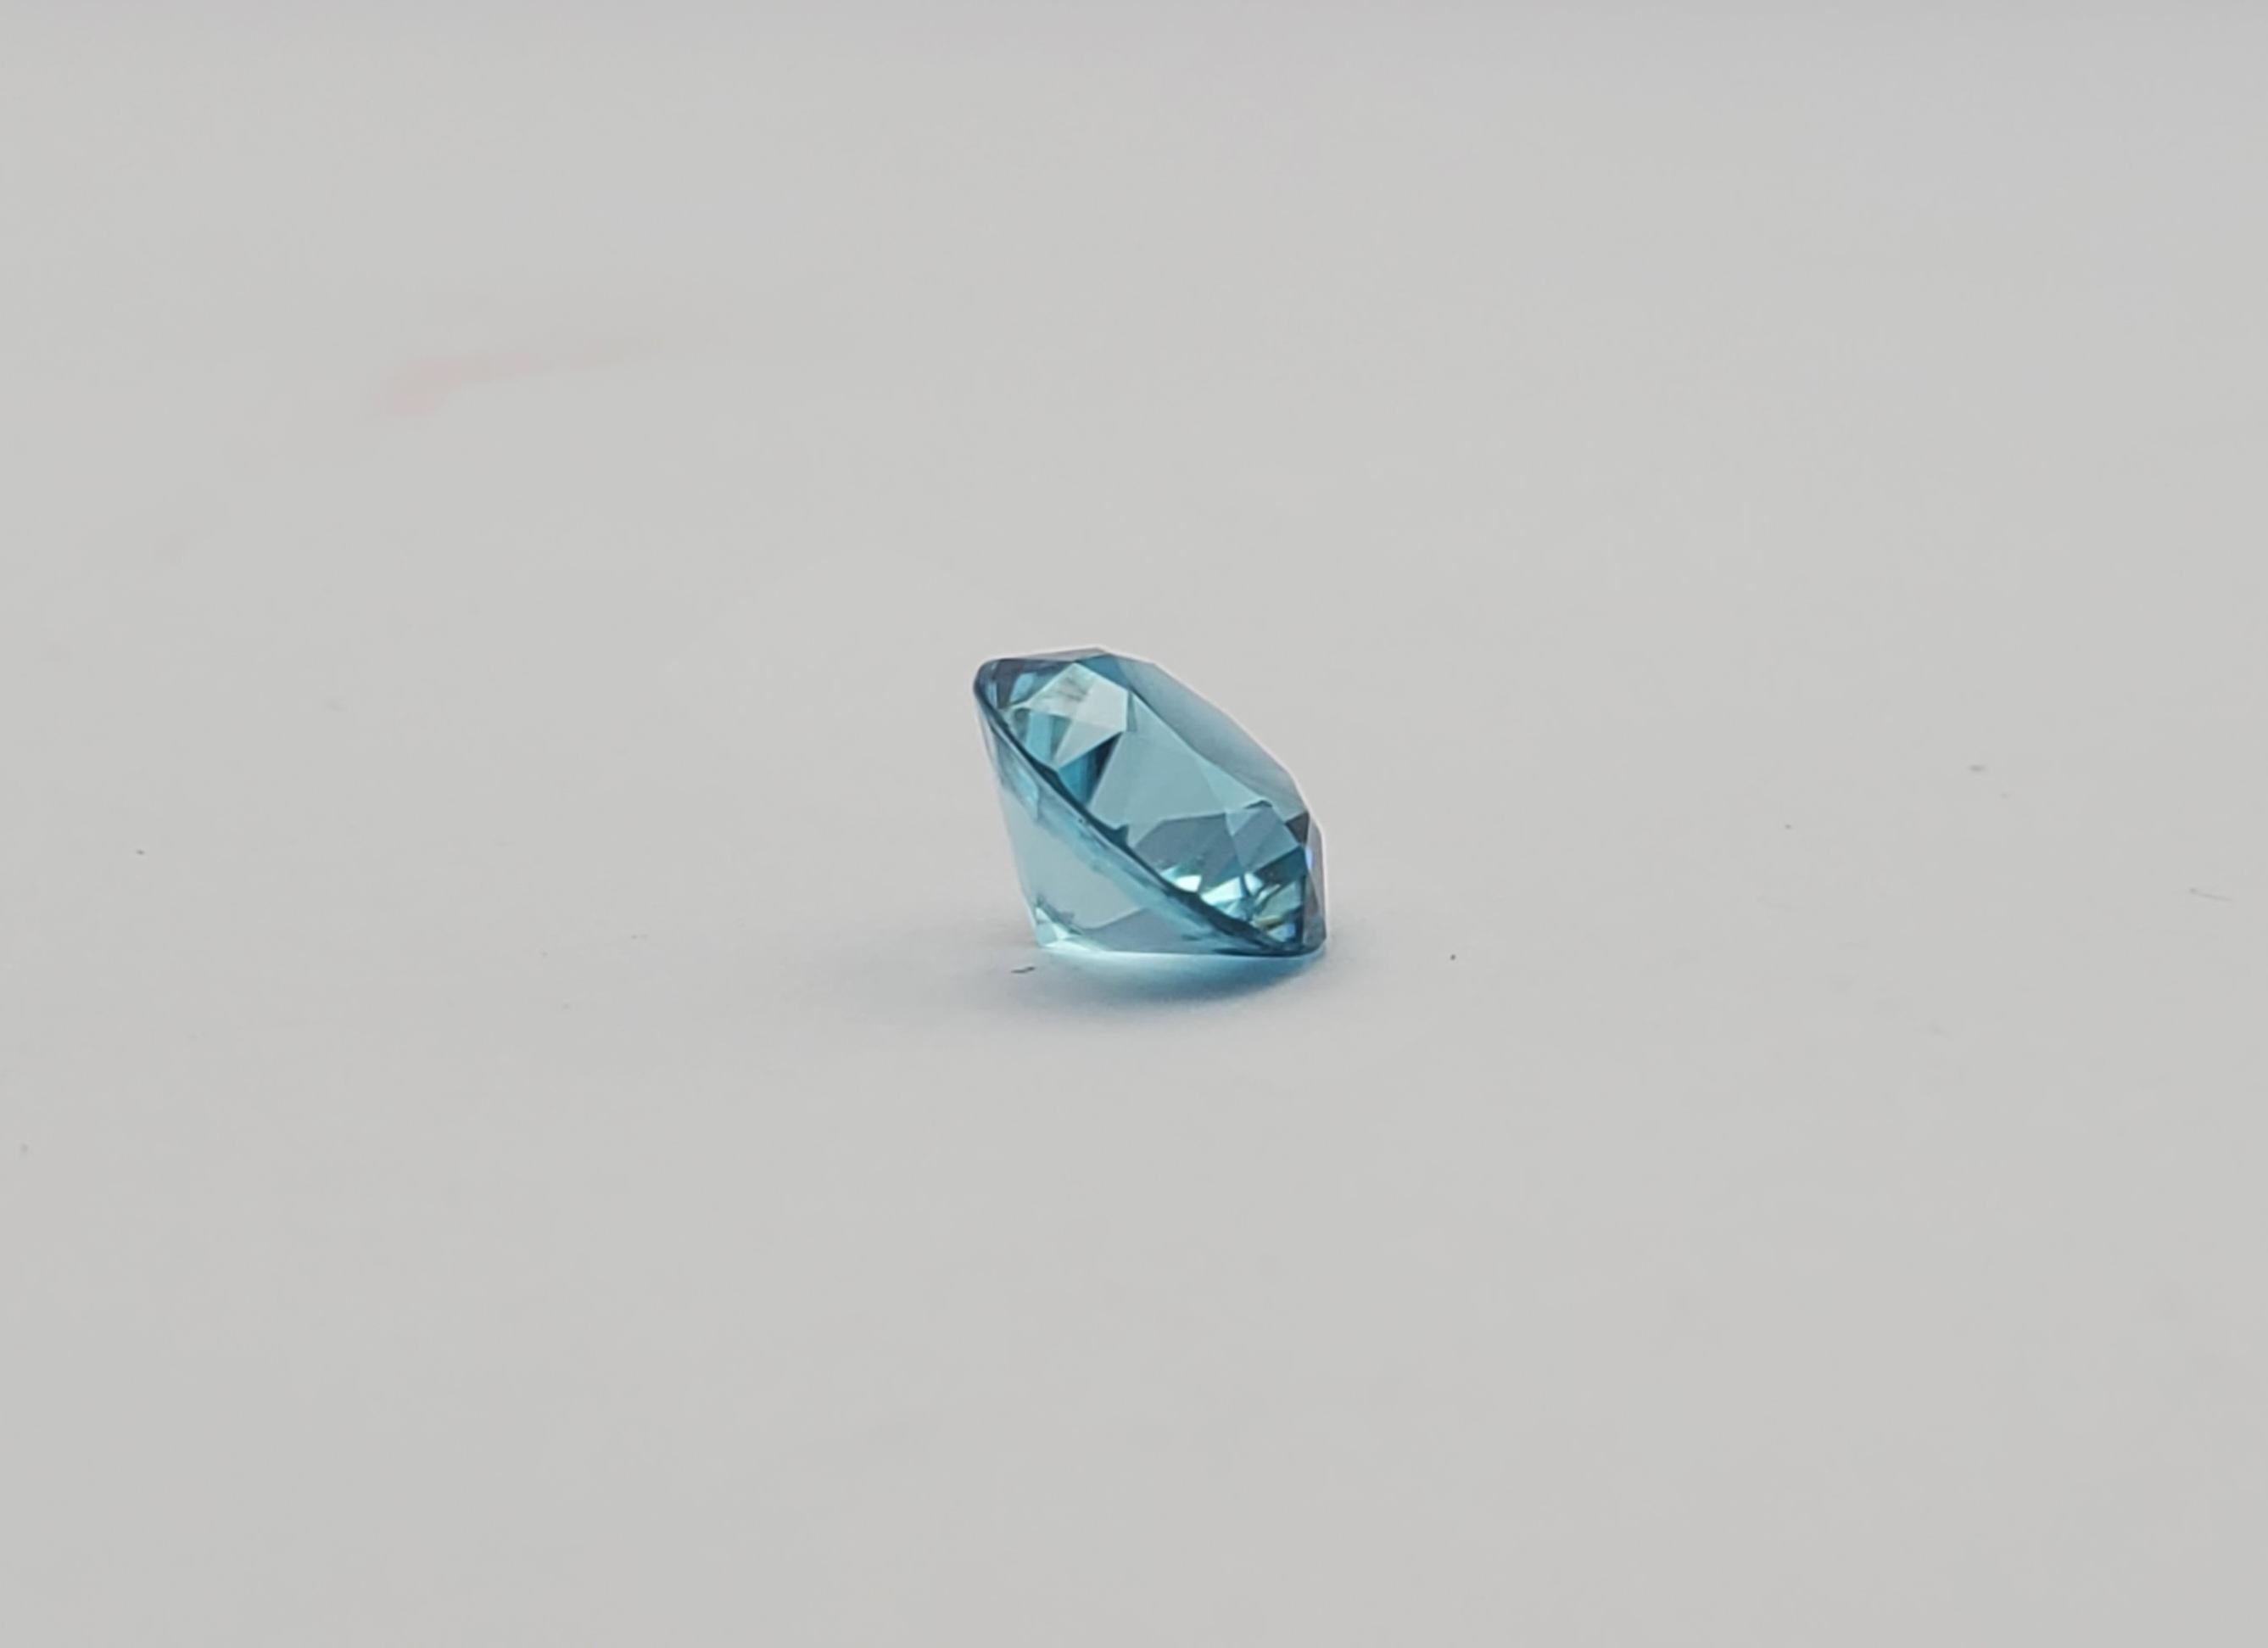 Superbe zircon bleu rond transparent de 2,93ct. Sa taille importante et sa beauté électrique captiveront le regard de ceux qui apprécient les pierres précieuses. La pierre précieuse mesure 8,02-8,04 x 5,20 mm, ce qui lui permet de s'imposer dans